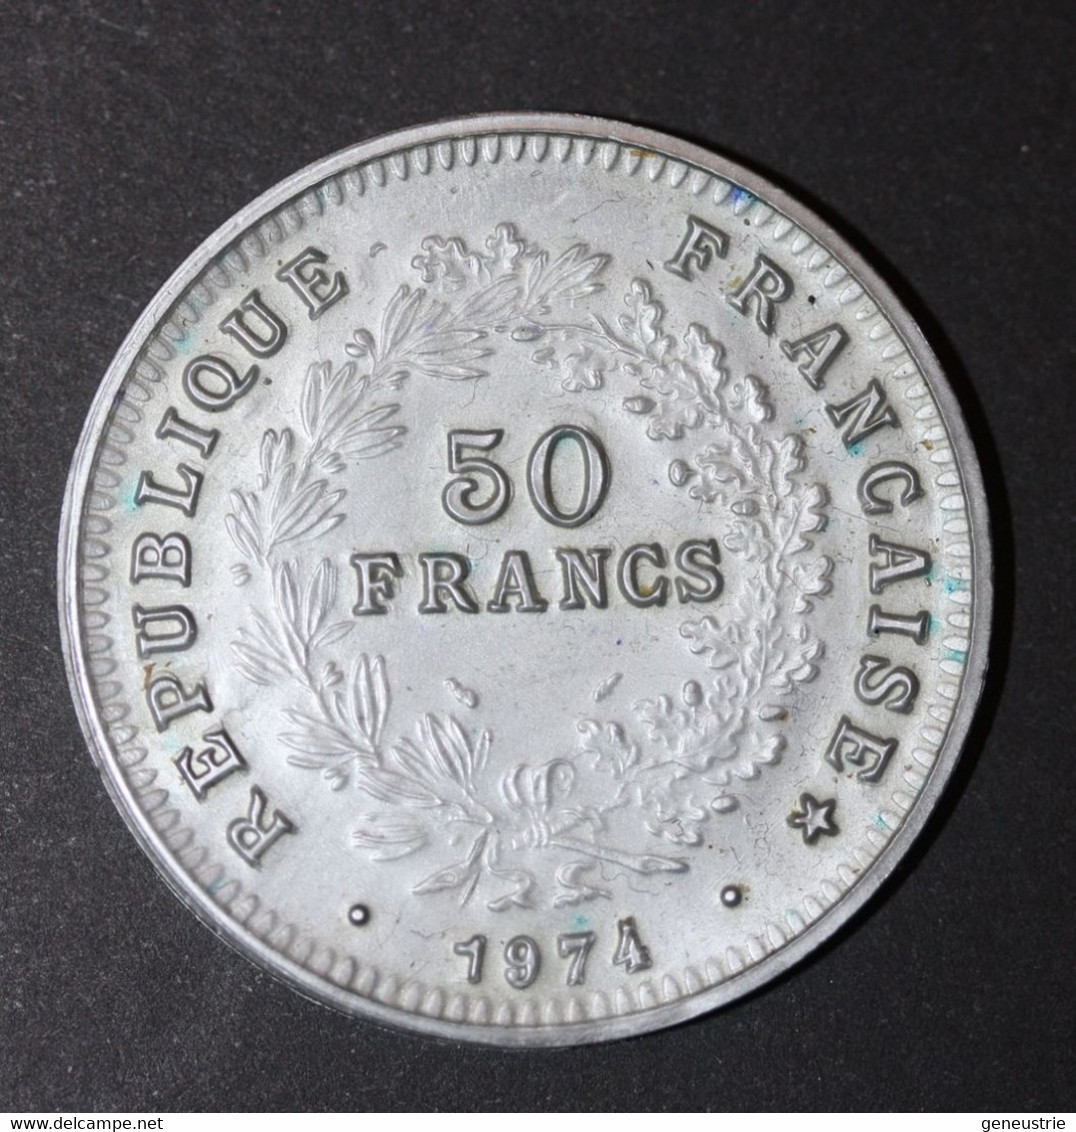 Pièce De 50 Francs Type Hercule 1974 - Jeton Plastique école En Francs Années 60 - Coins School Token - Professionals/Firms